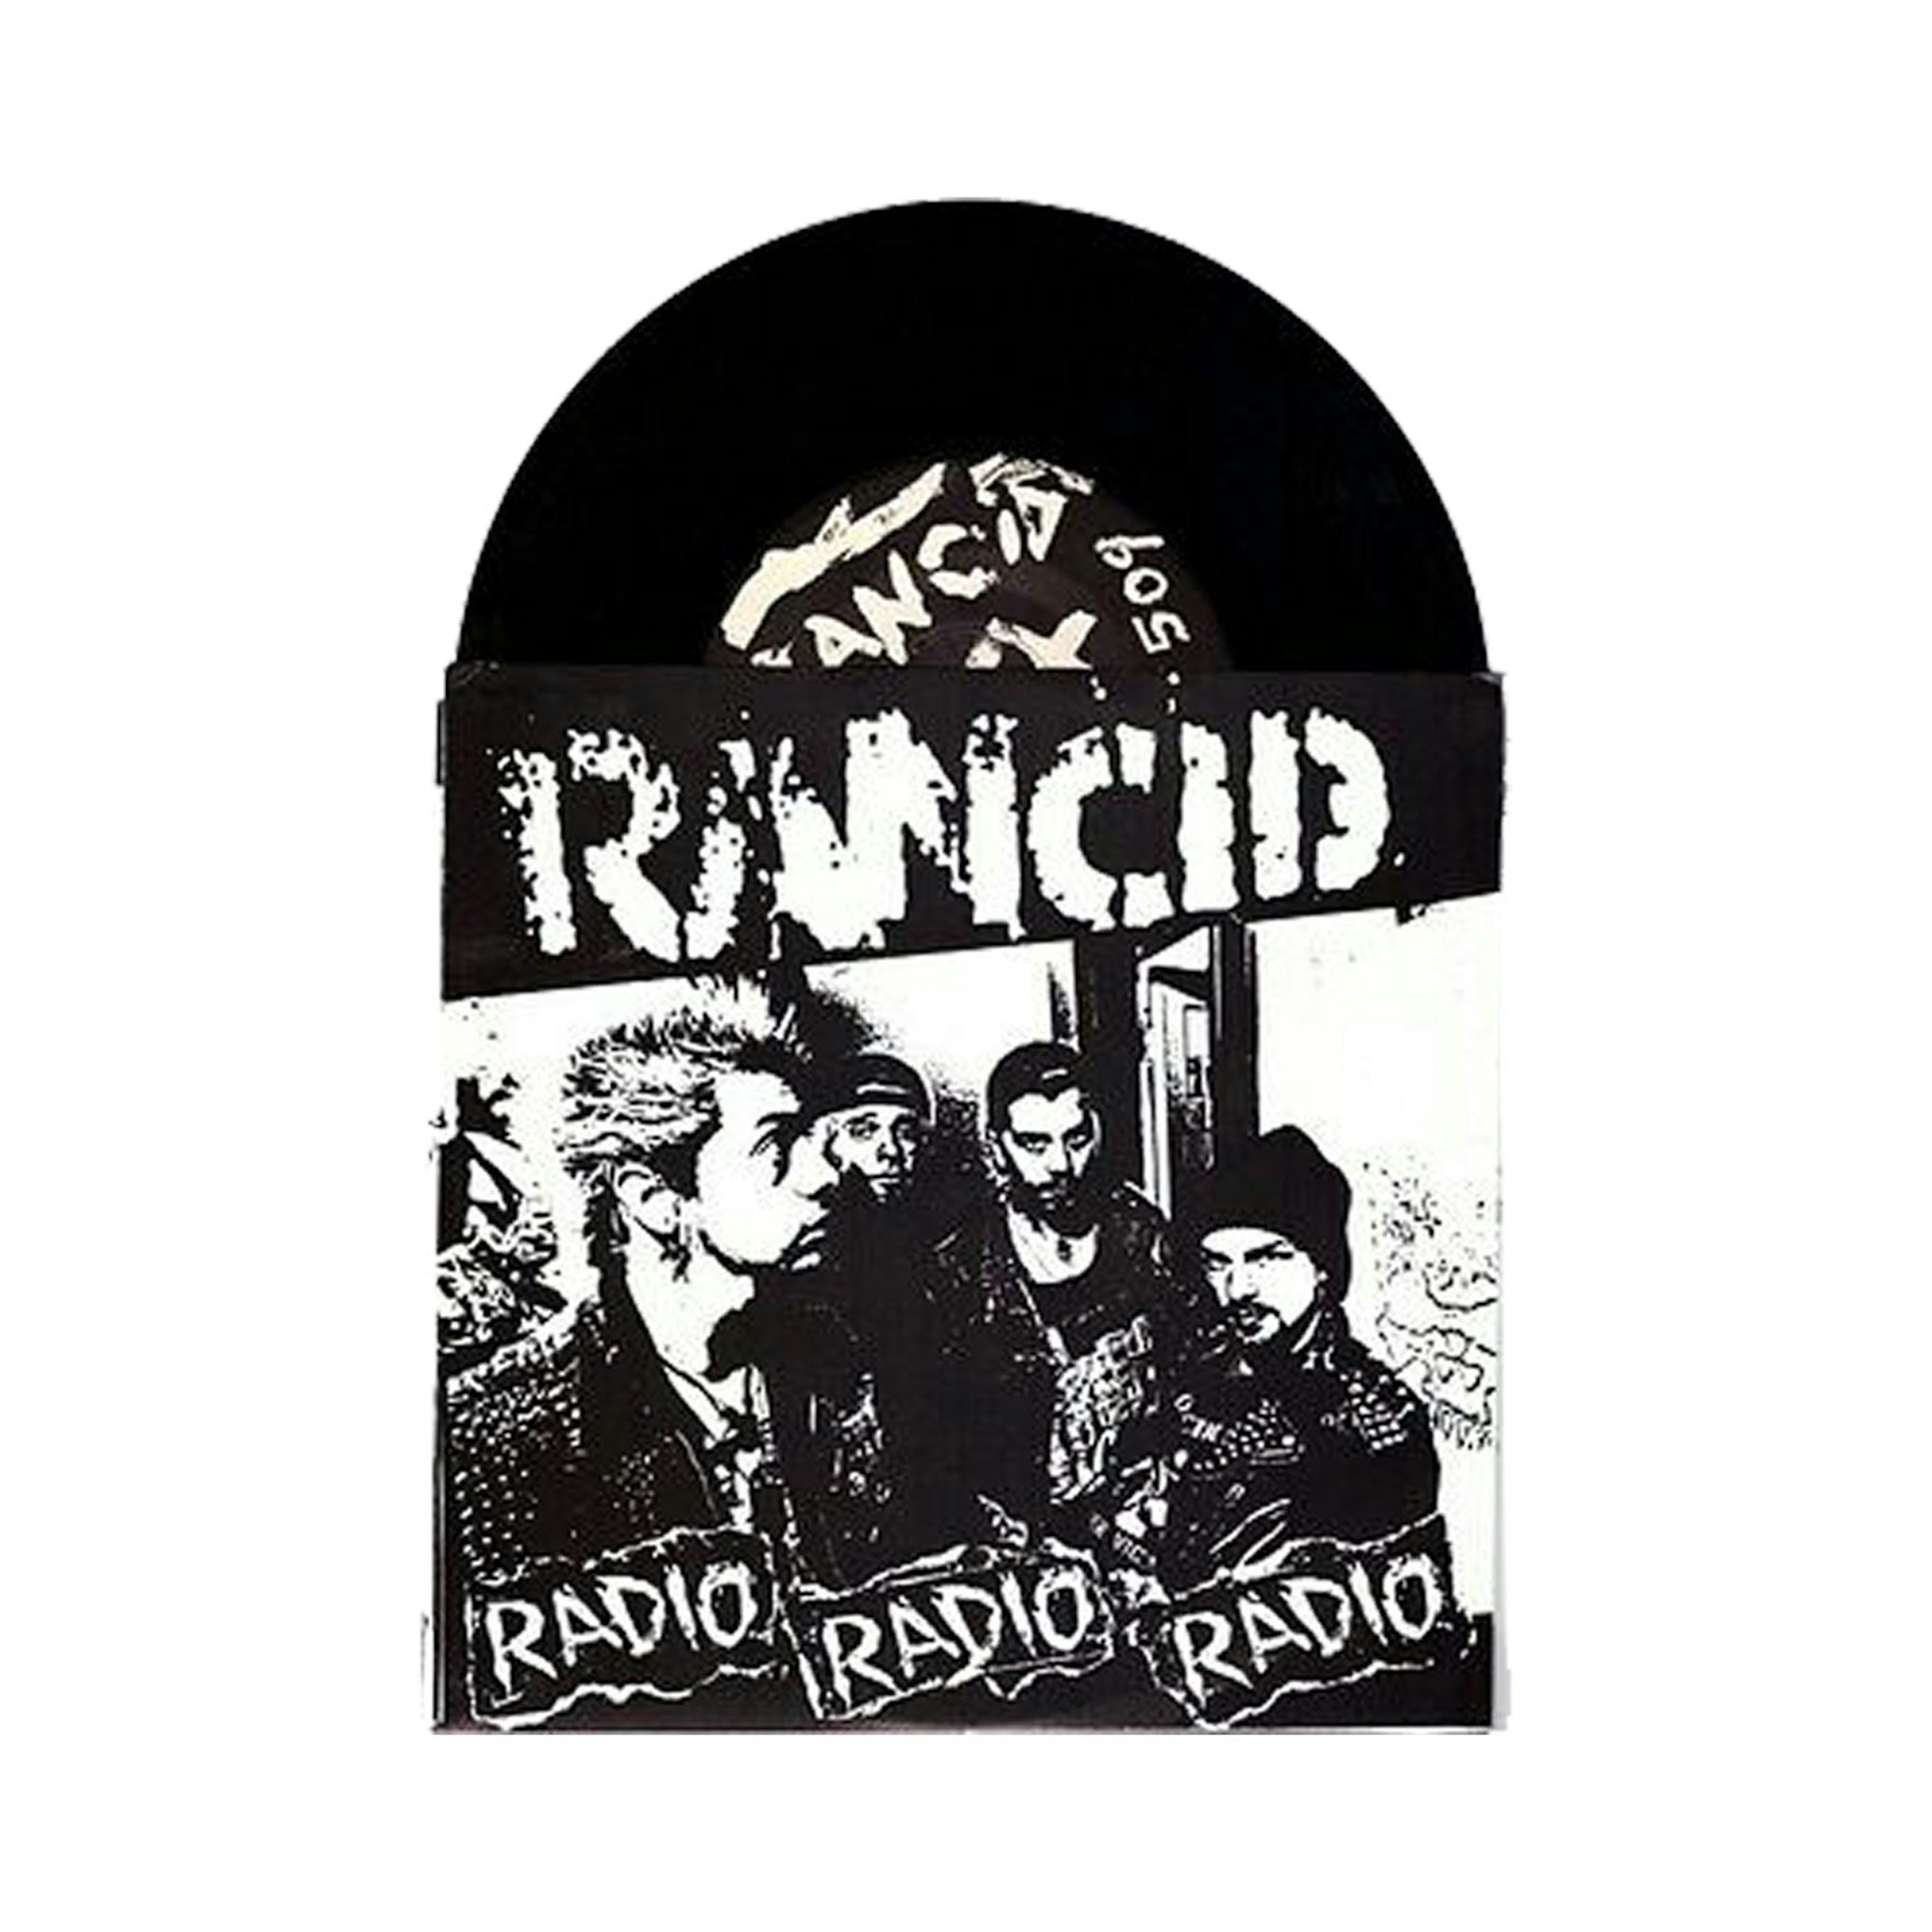 Continuamente Acorazado General Rancid Radio, Radio, Radio 7" (Black) (Vinyl)